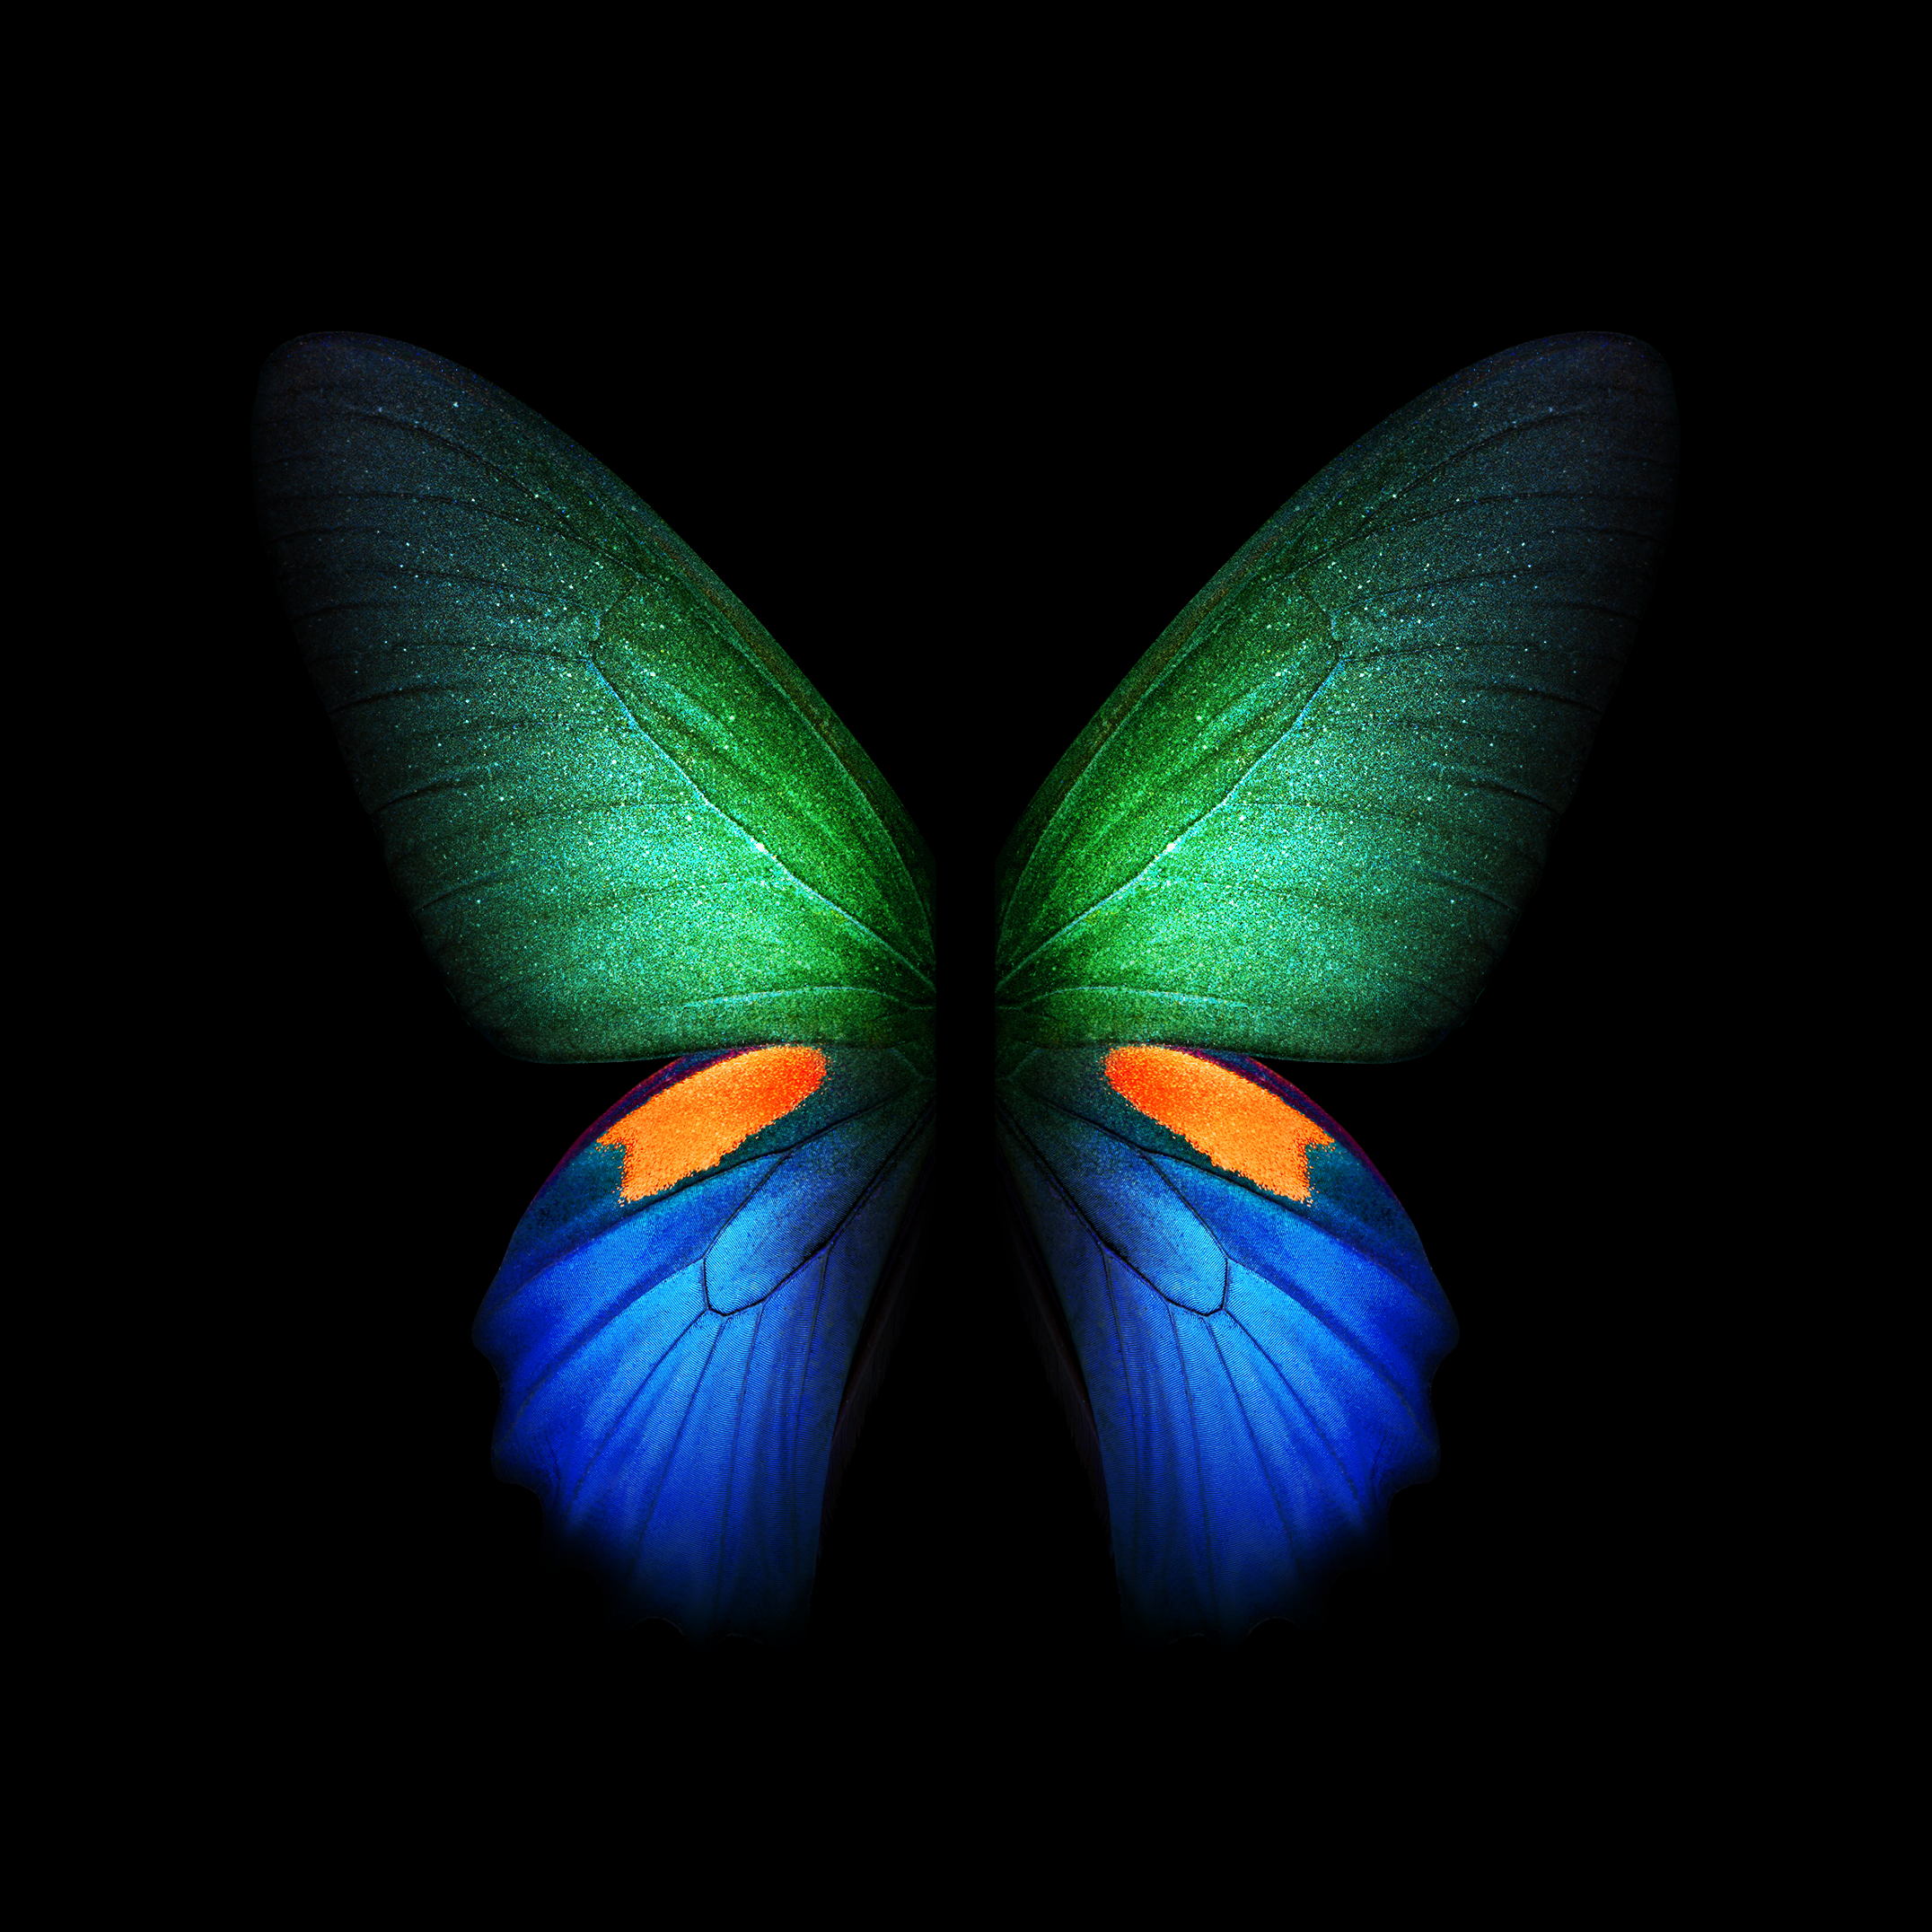 fonds d'écran mobiles hd pour samsung,papillon,insecte,papillons et papillons,bleu,symétrie